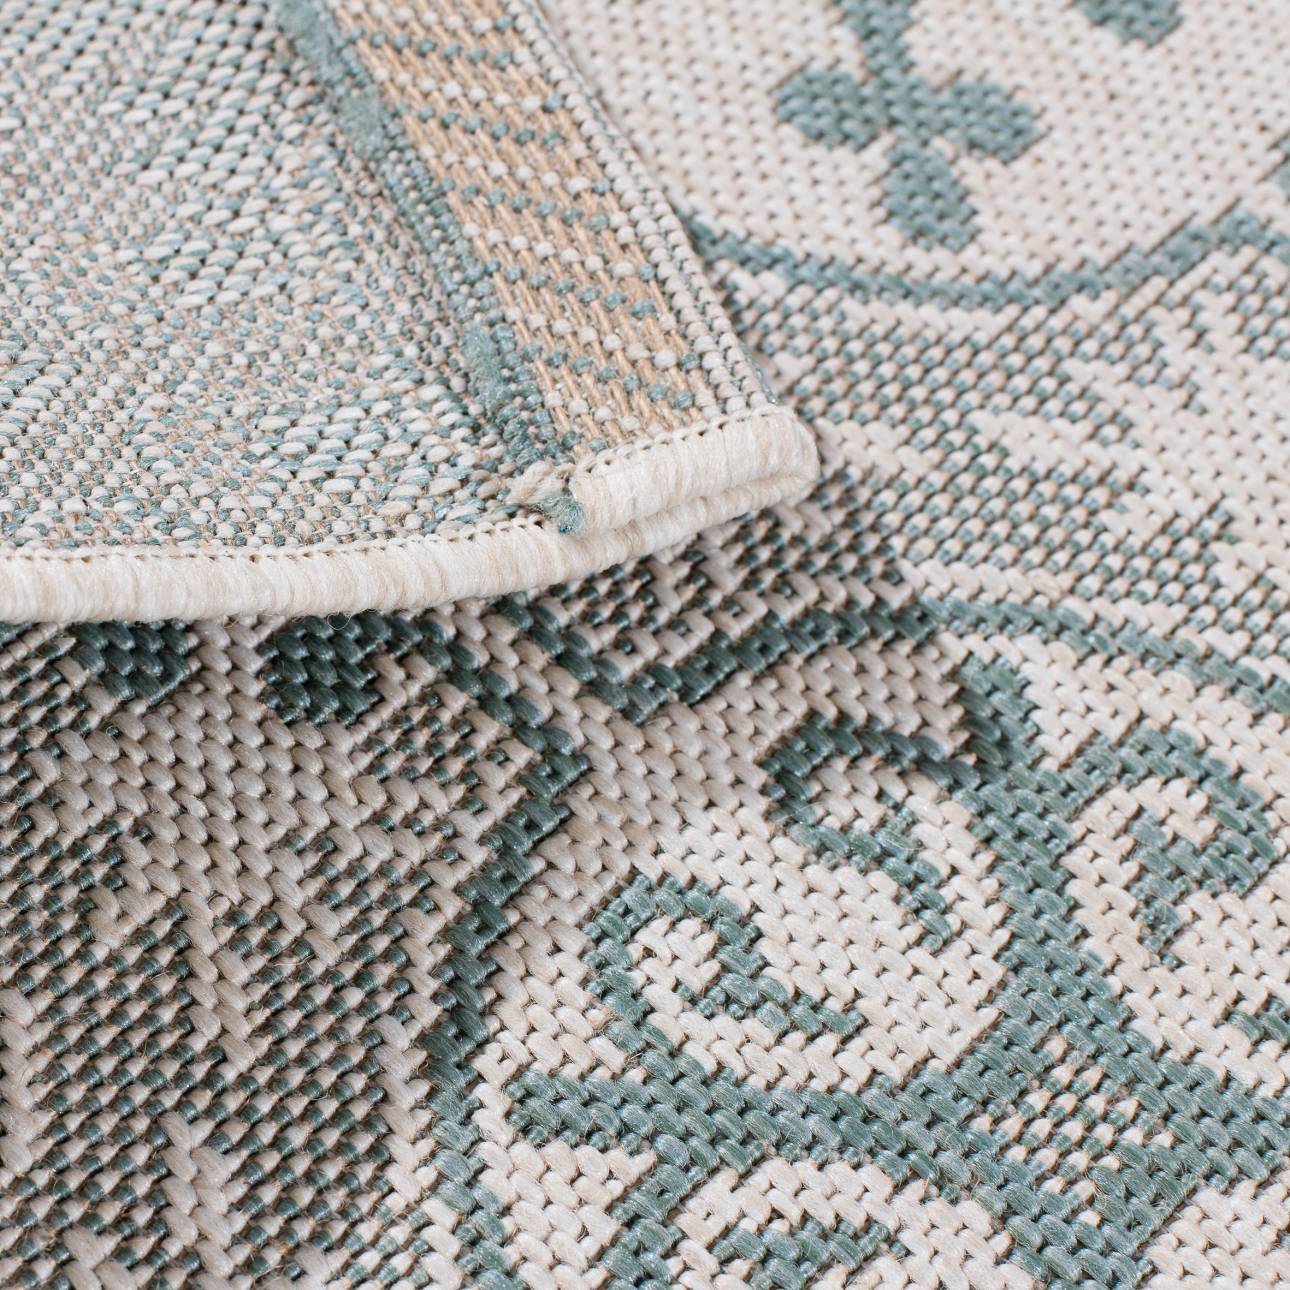 Teppich Modern Etno wool/ spa blue 120x170cm, 120 x 170 cm günstig online kaufen